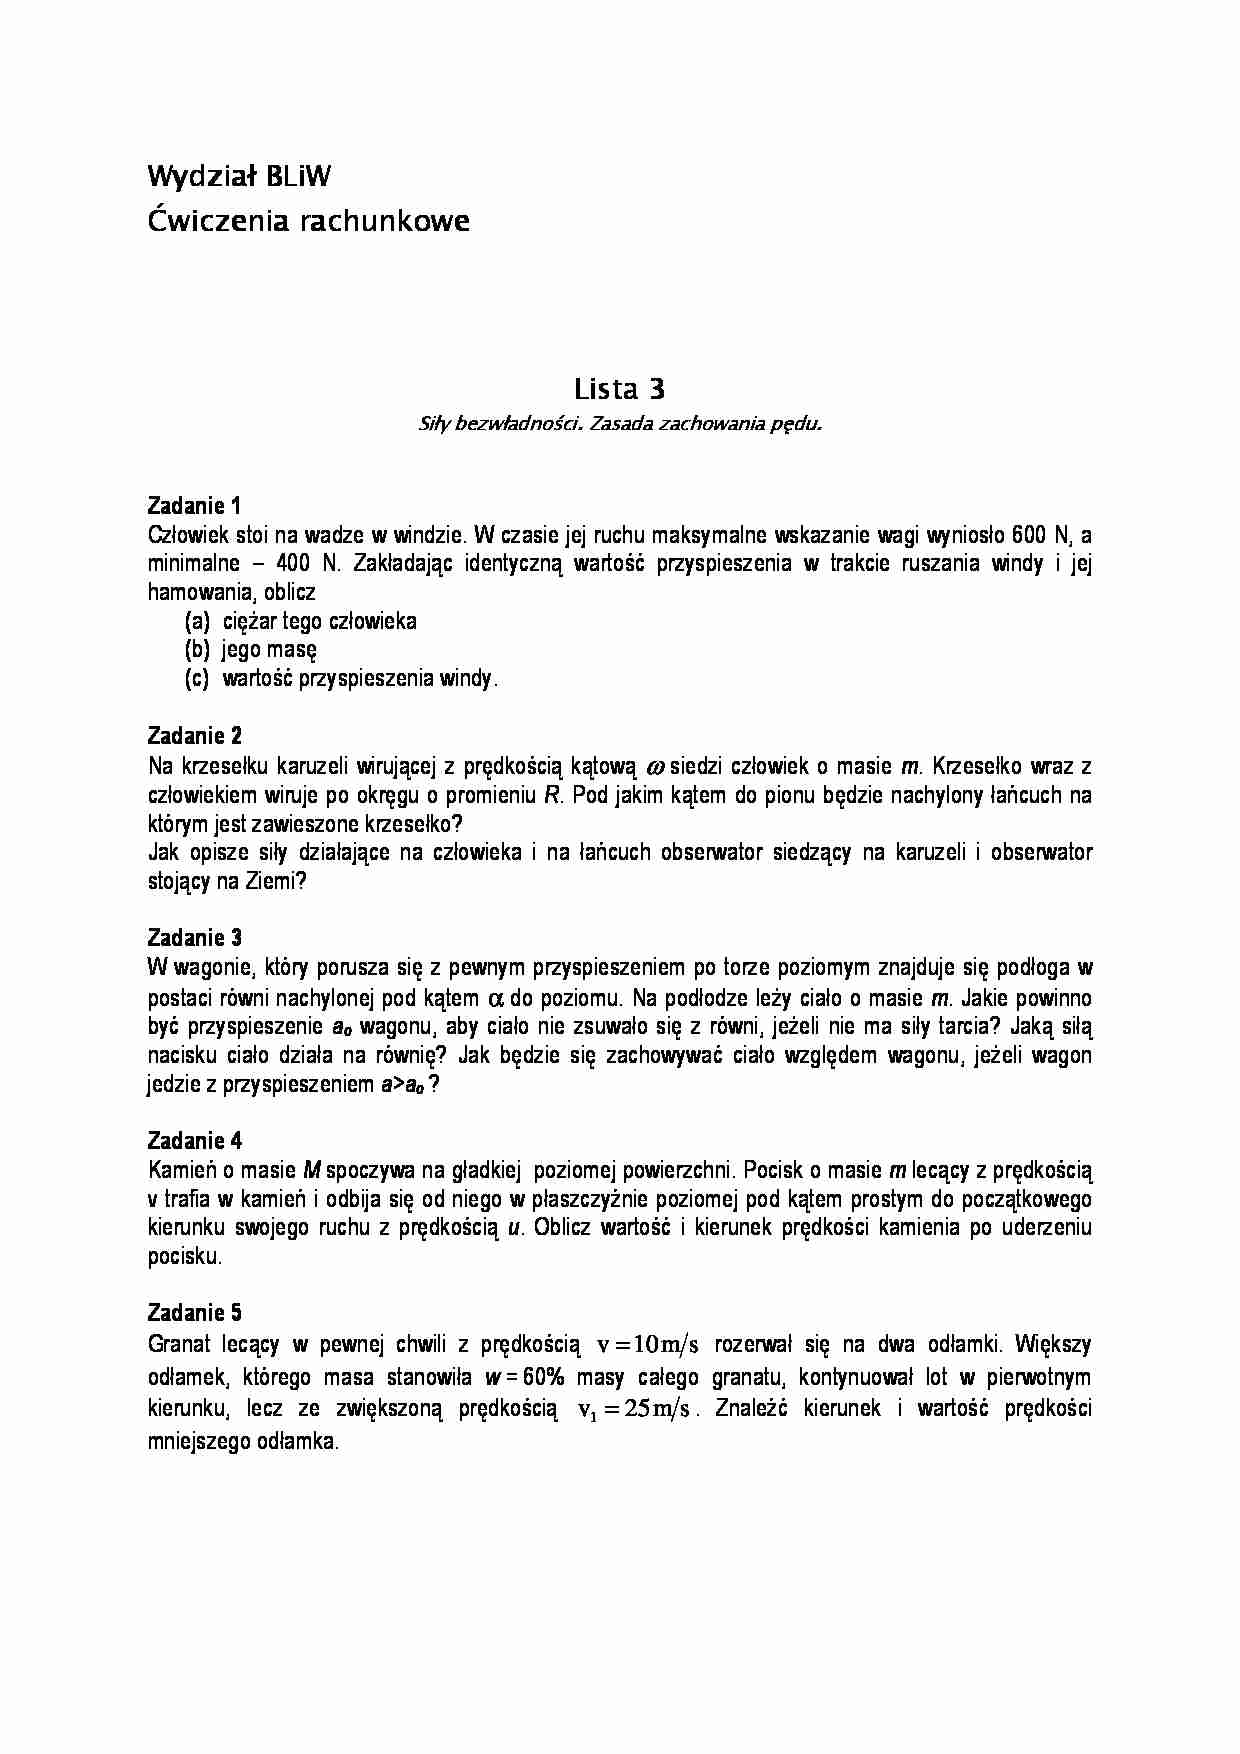 Kinematyka - zadania 3 - strona 1